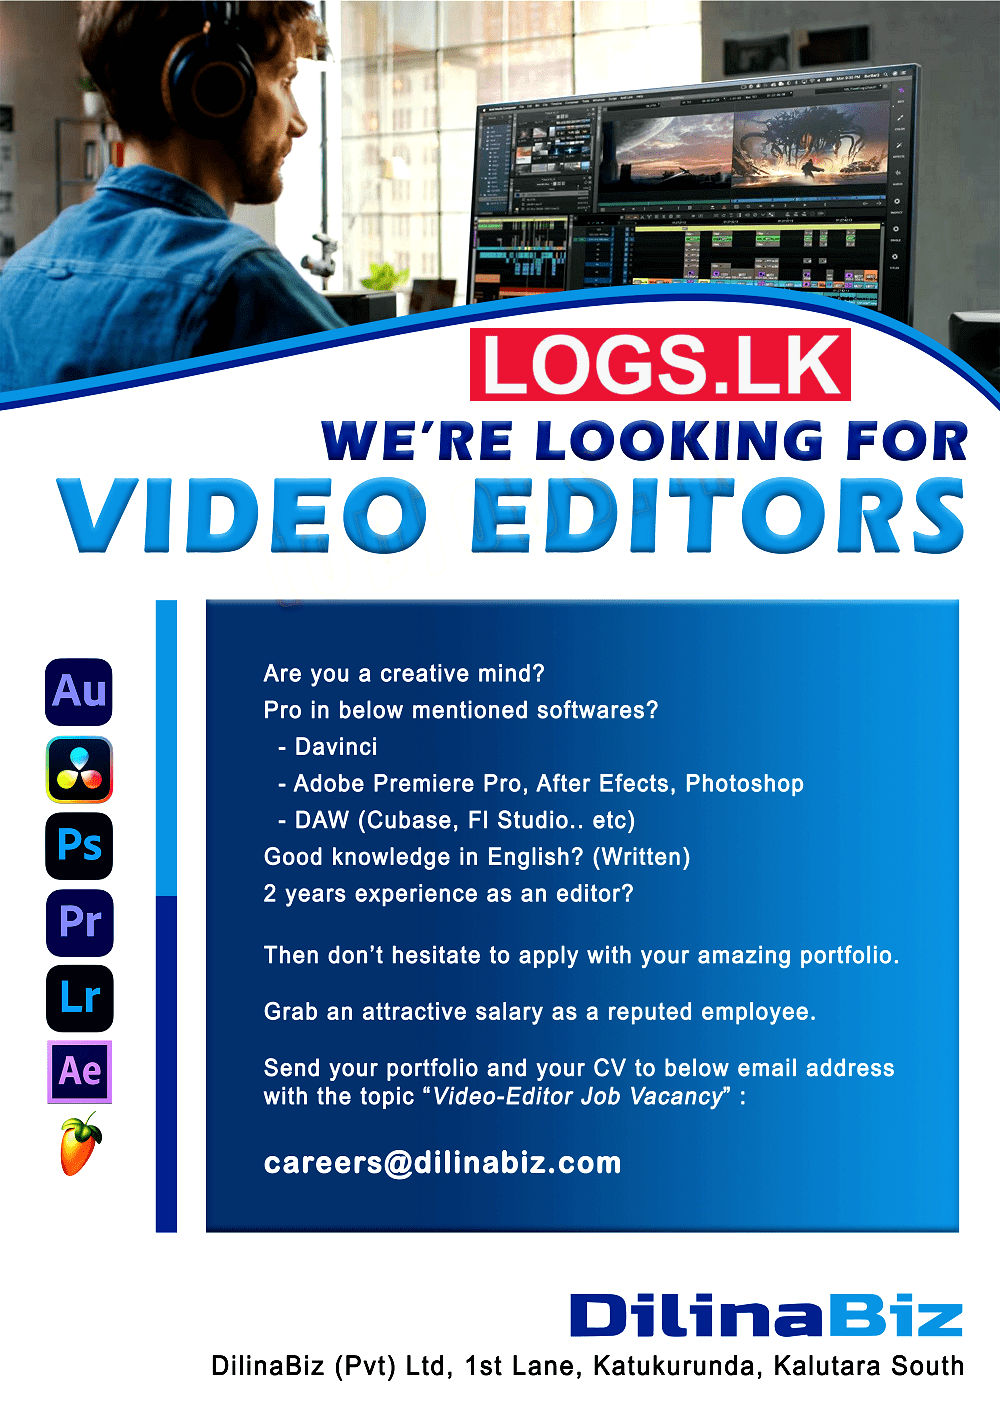 Video Editors Job Vacancies at DilinaBiz (Pvt) Ltd Job Vacancies